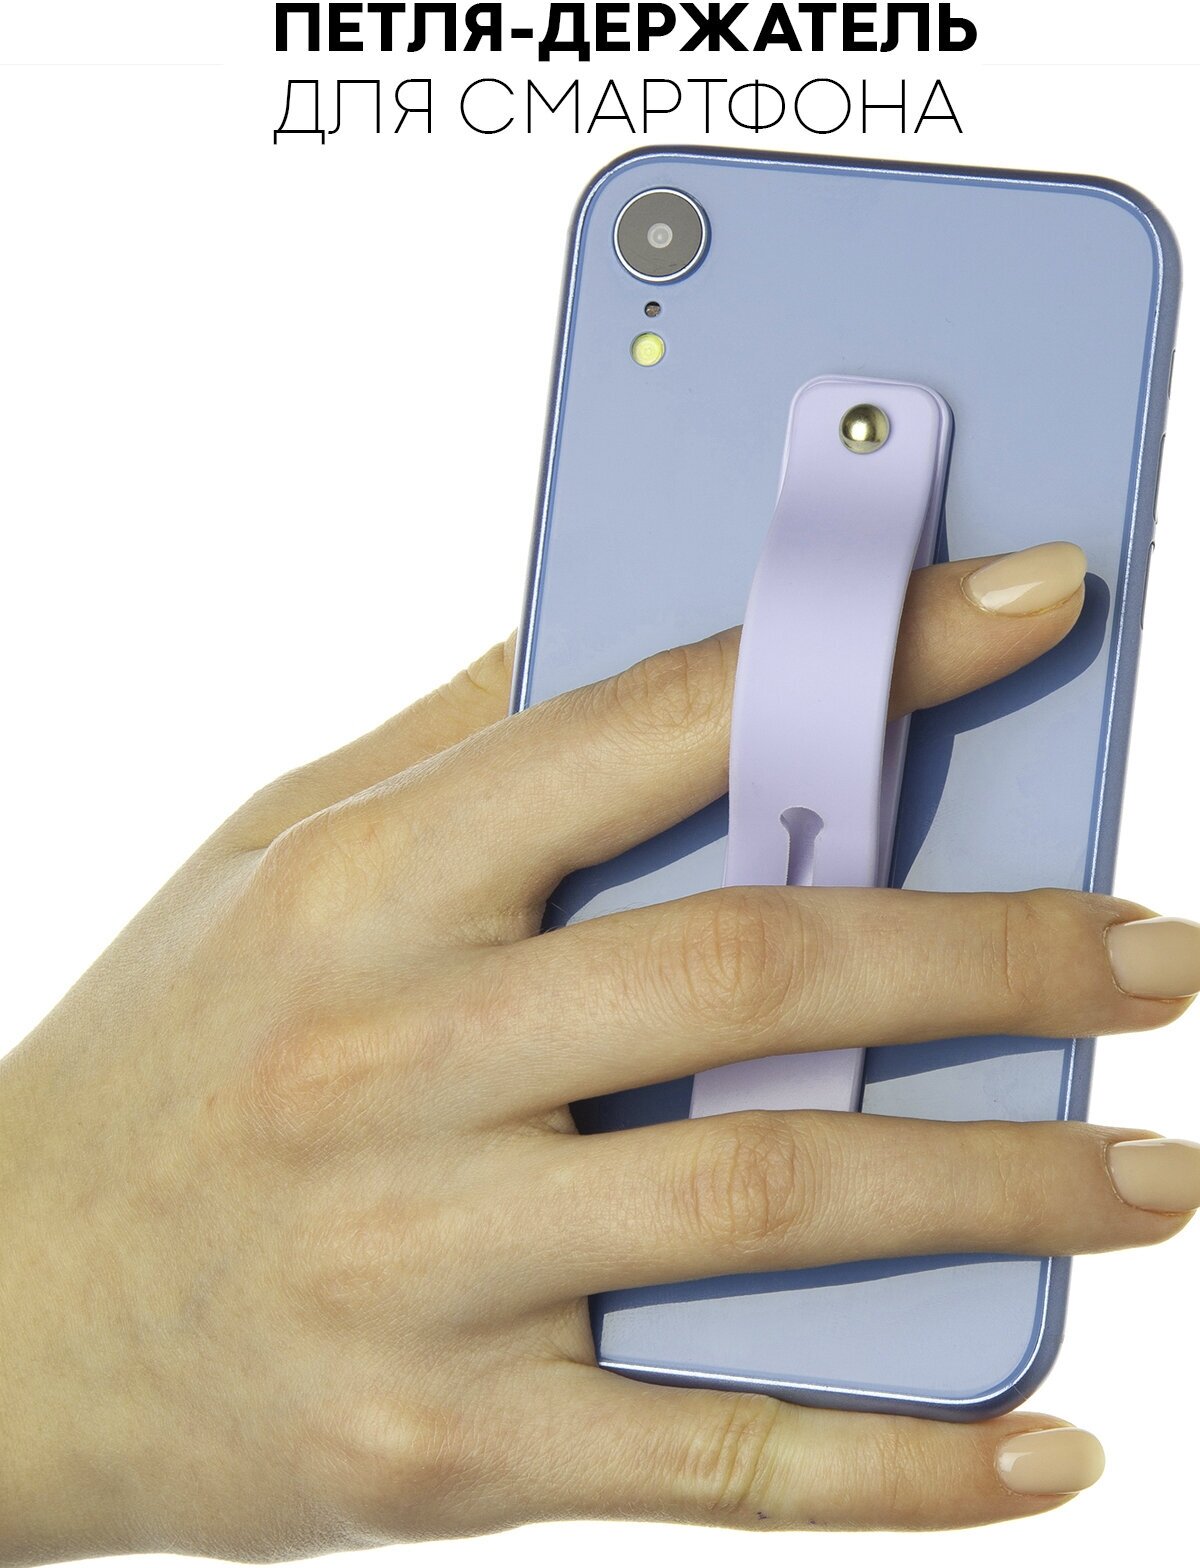 Силиконовая петля-ремешок для мобильного телефона (держатель для пальцев и подставка дляартфона 2 в 1) бренд картофан цвет сиреневый